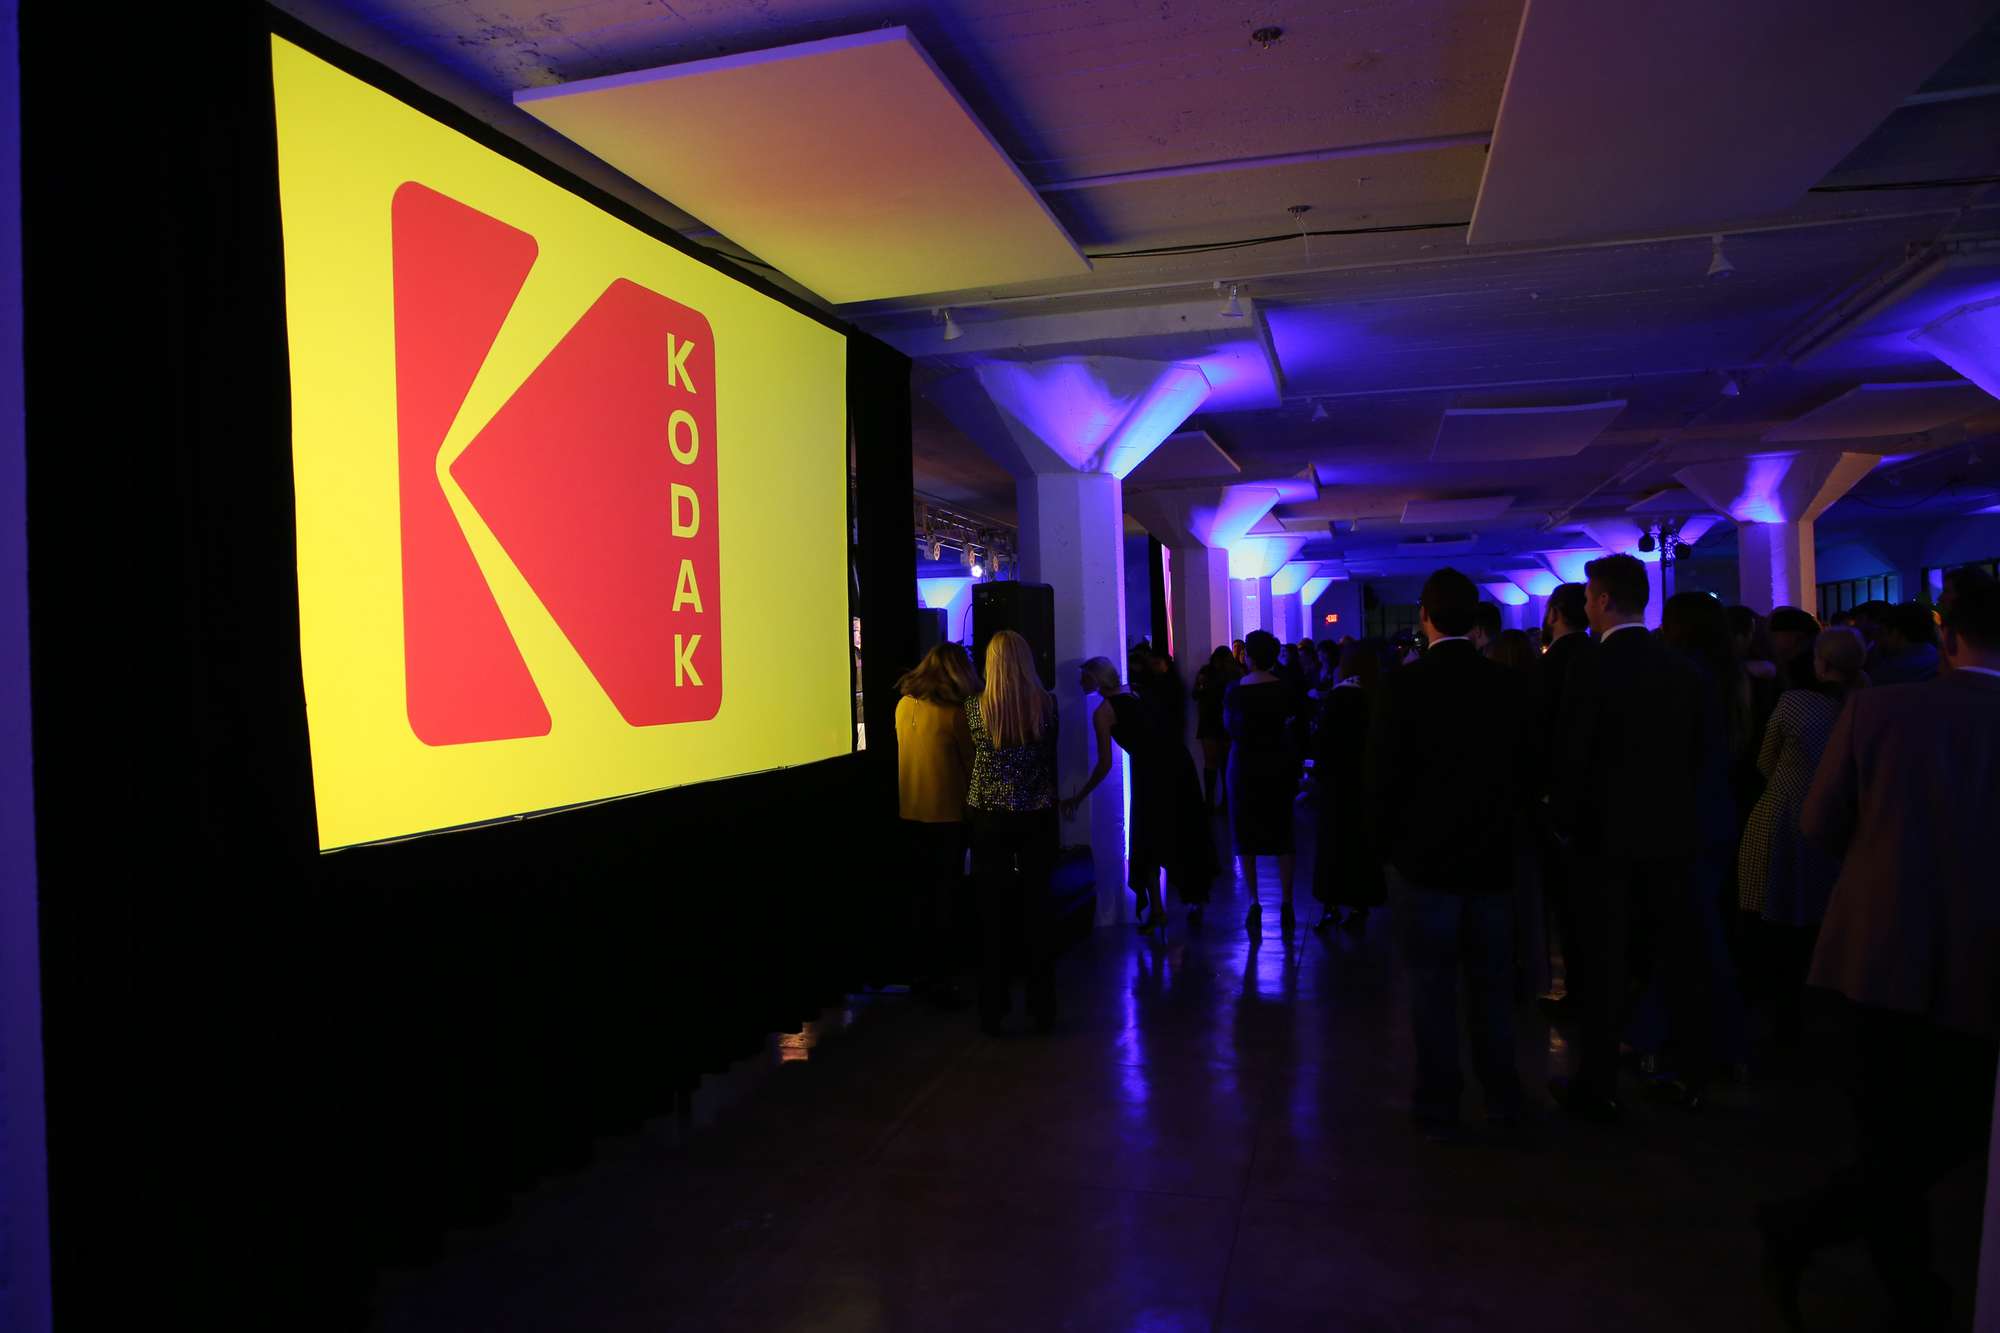 Kolmas vuotuinen Kodak Awards, 15. helmikuuta 2019